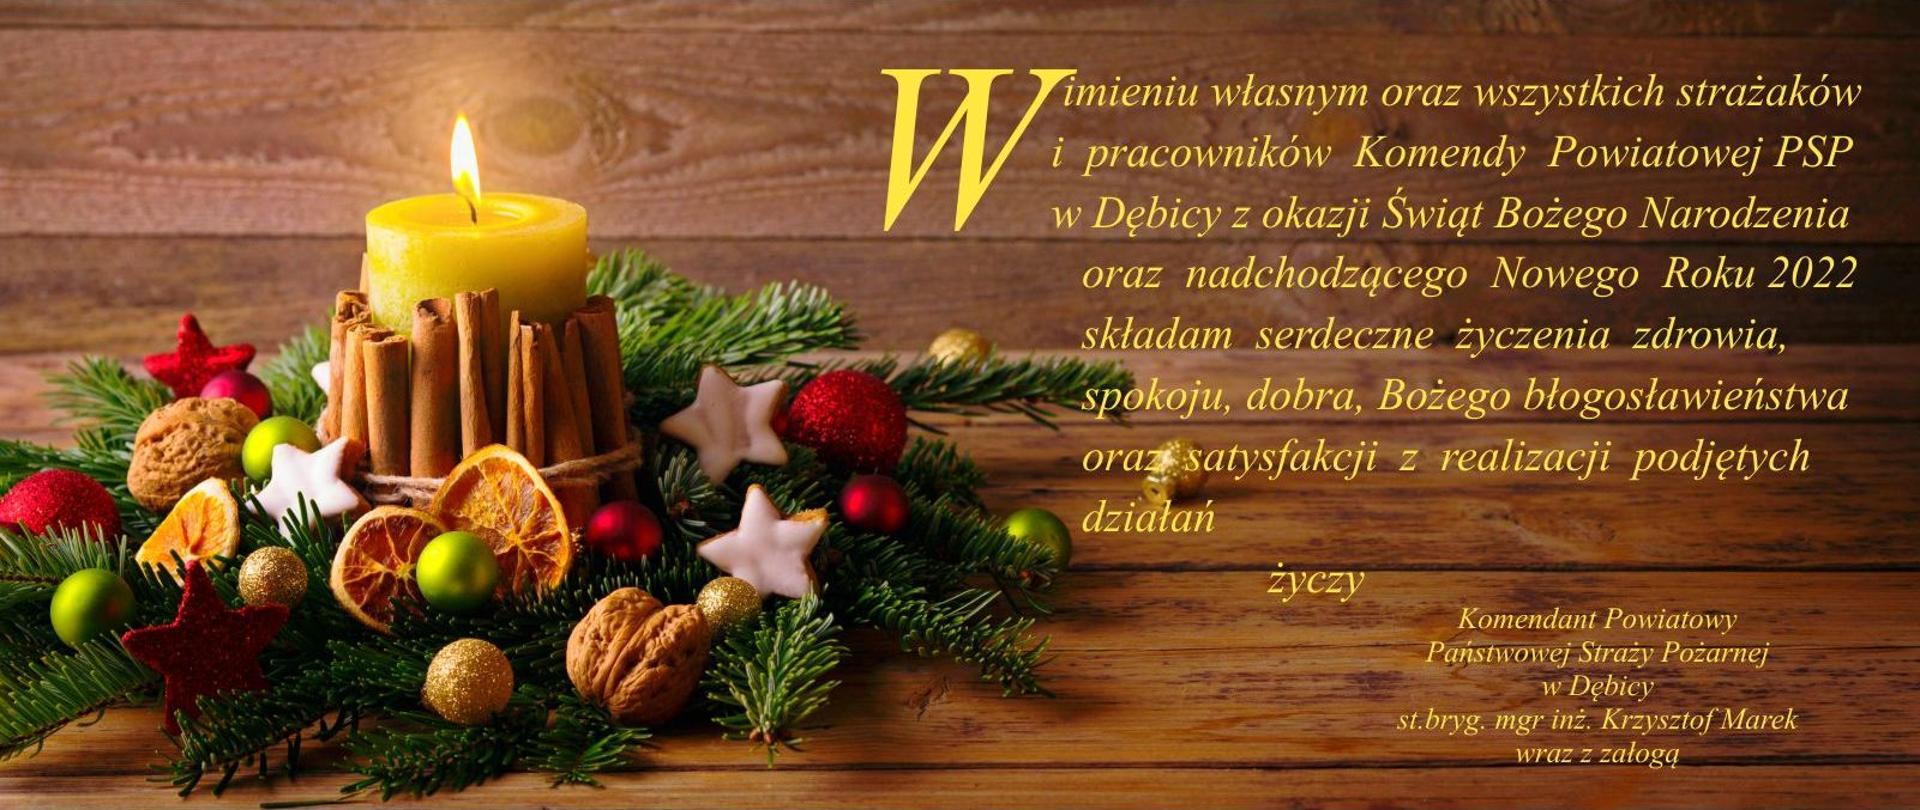 życzenia na Boże Narodzenie 2021 na ciemnym tle, stroik z zielonych gałązek i paląca się żółta świeca